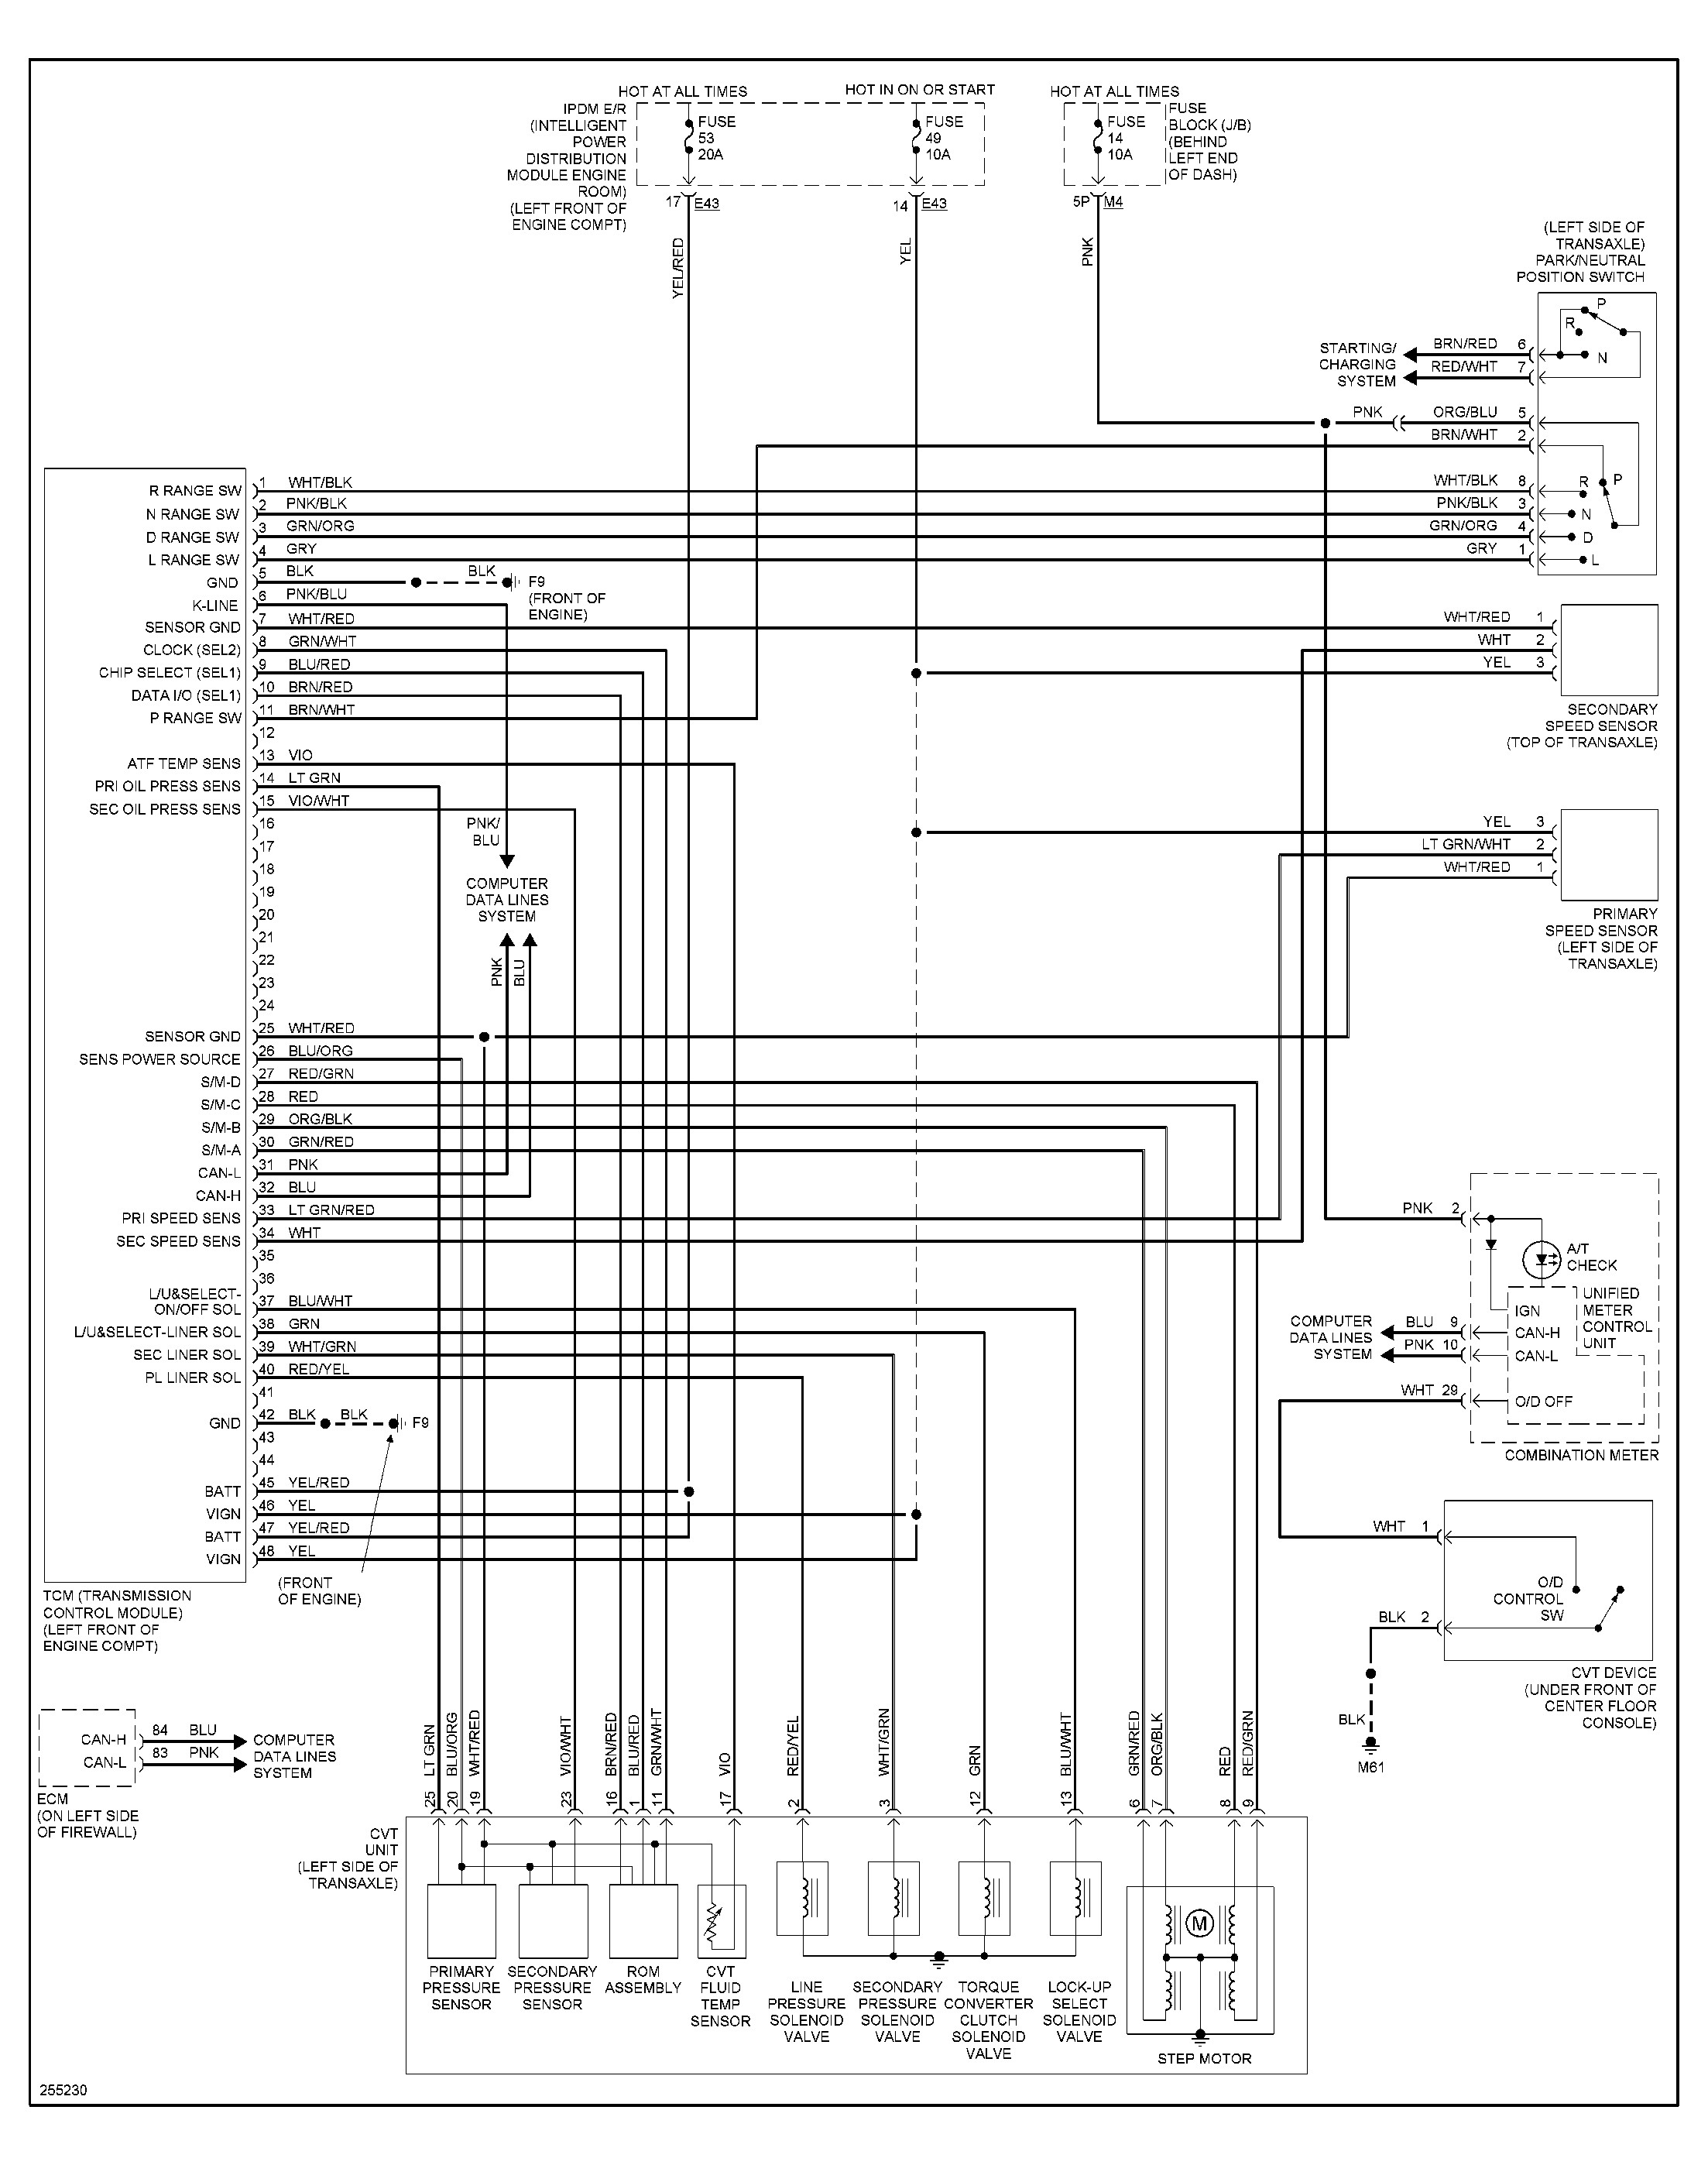 1993 Nissan Sentra Engine Diagram Wwwjustanswer Car 0612i2002nissansentrawirediagram Schema Of 1993 Nissan Sentra Engine Diagram